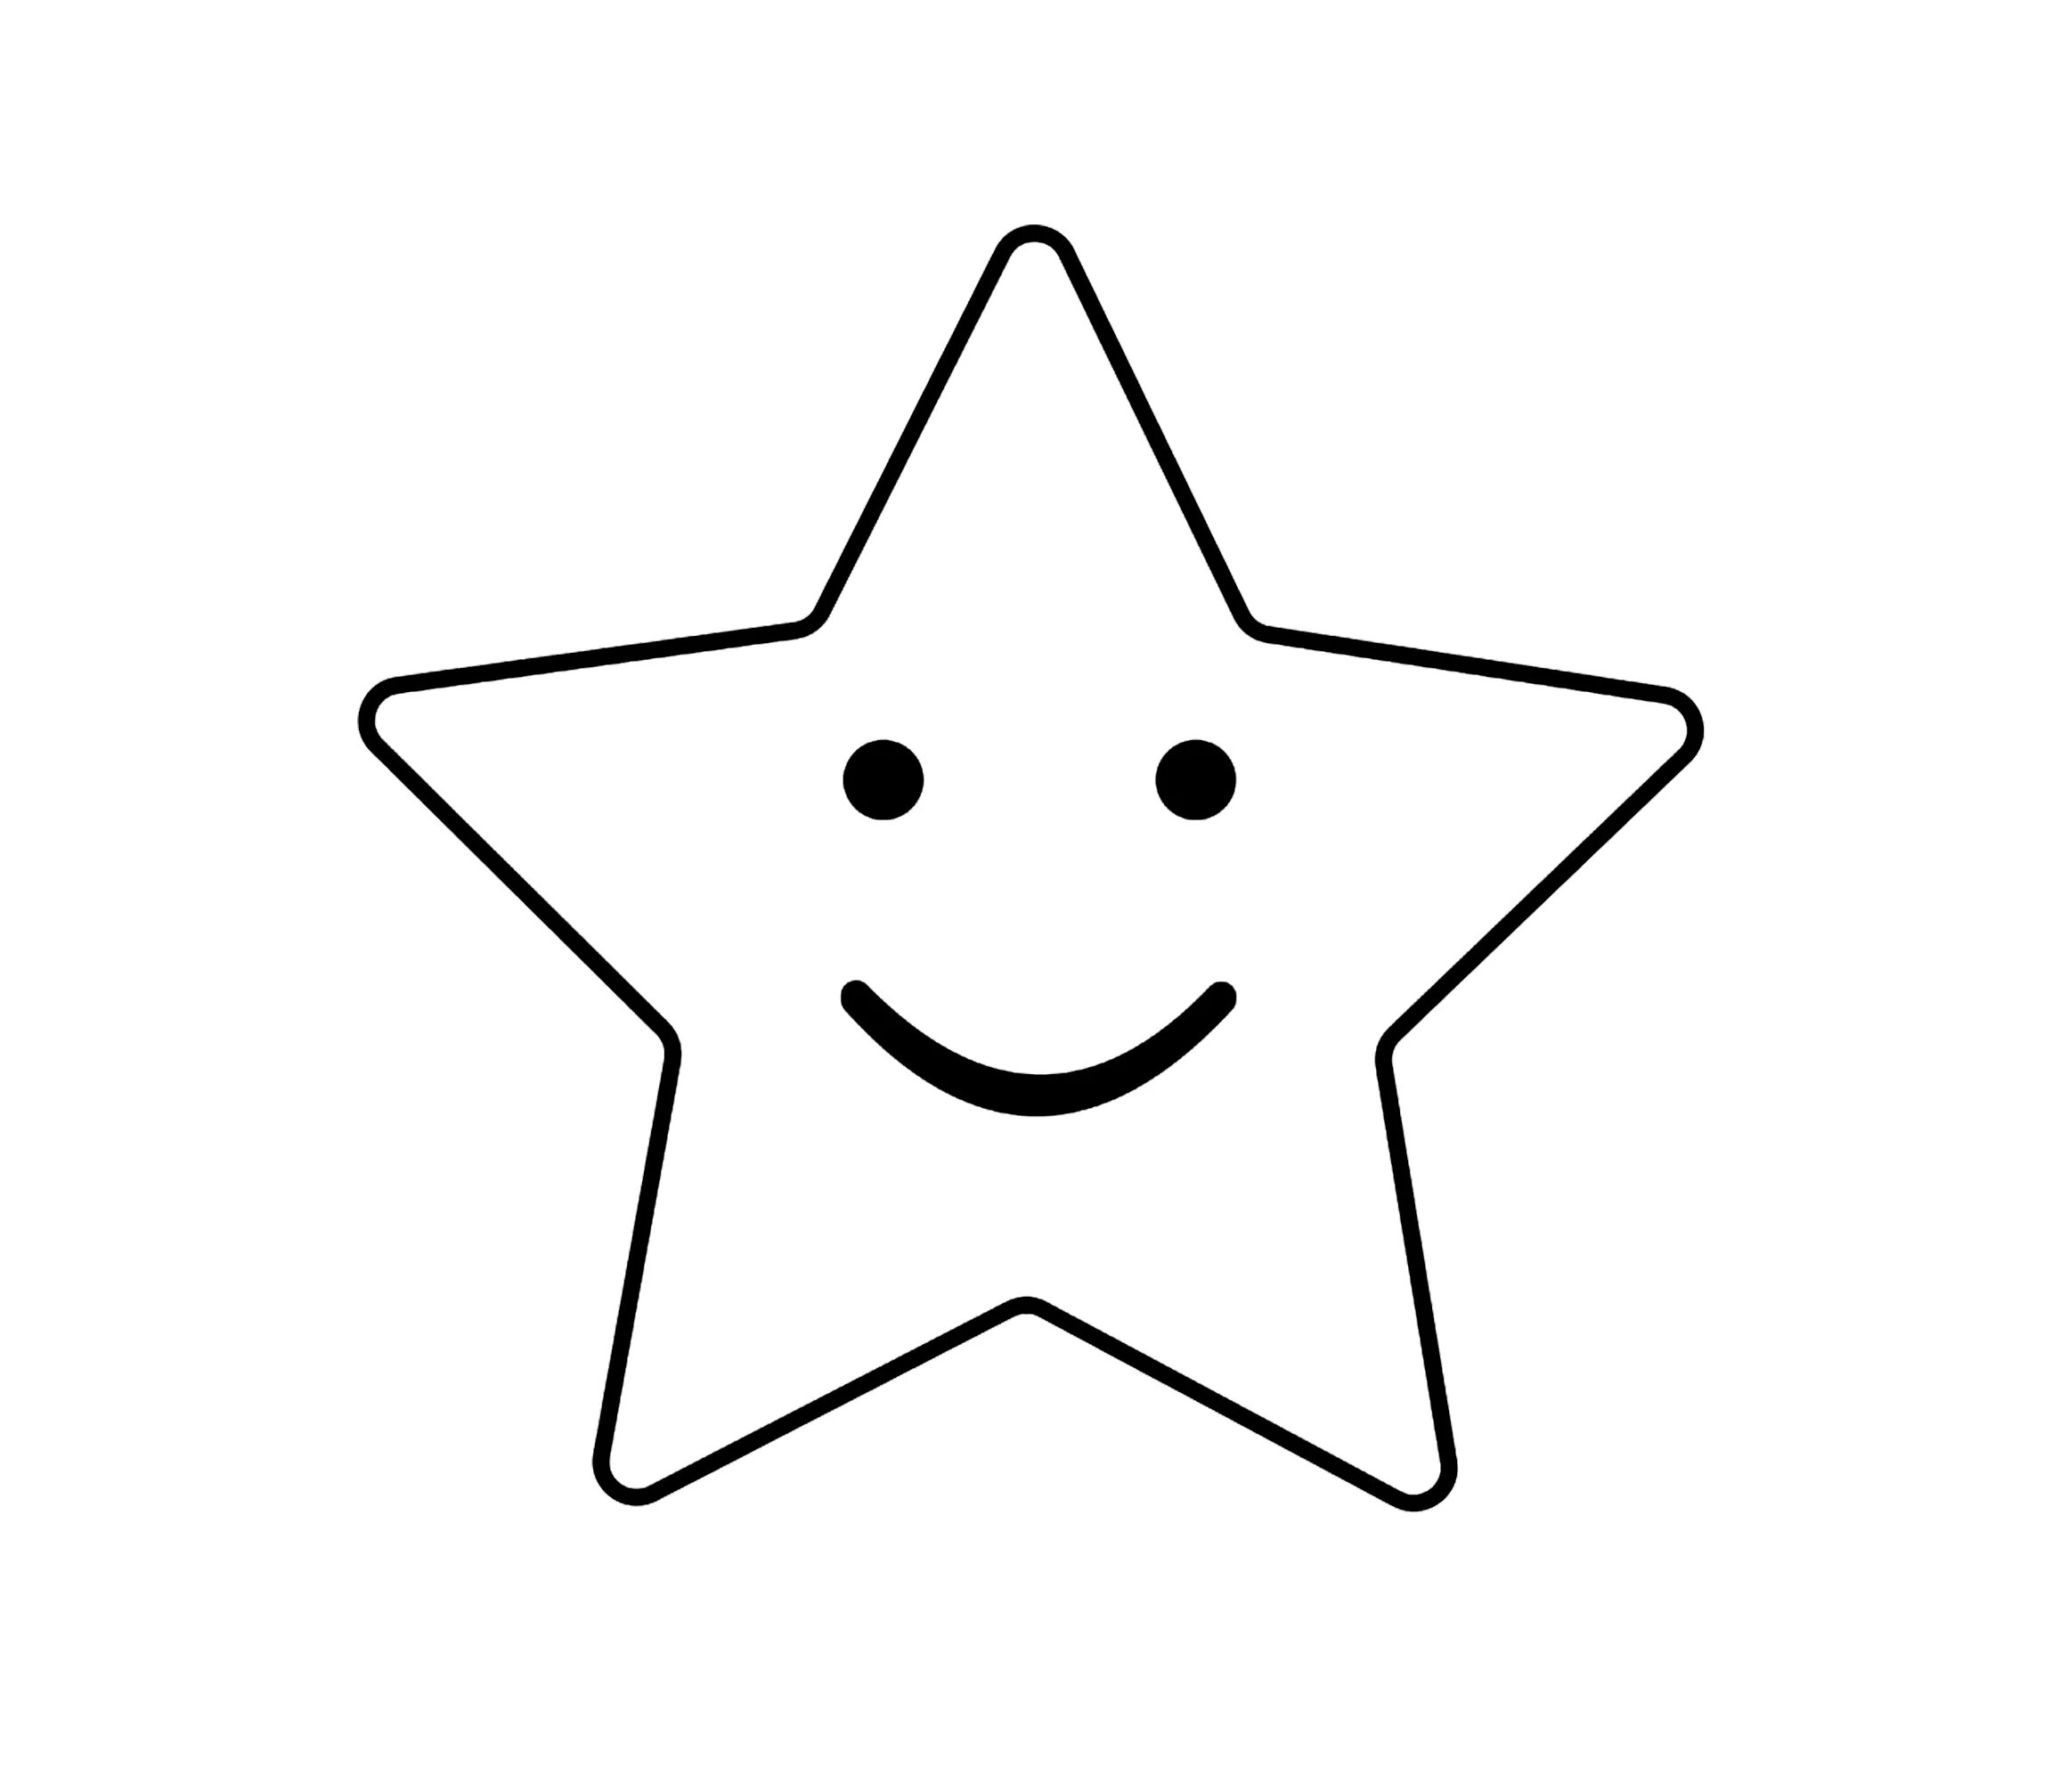 Раскраска «звезда взрыва цвета» для дошкольников